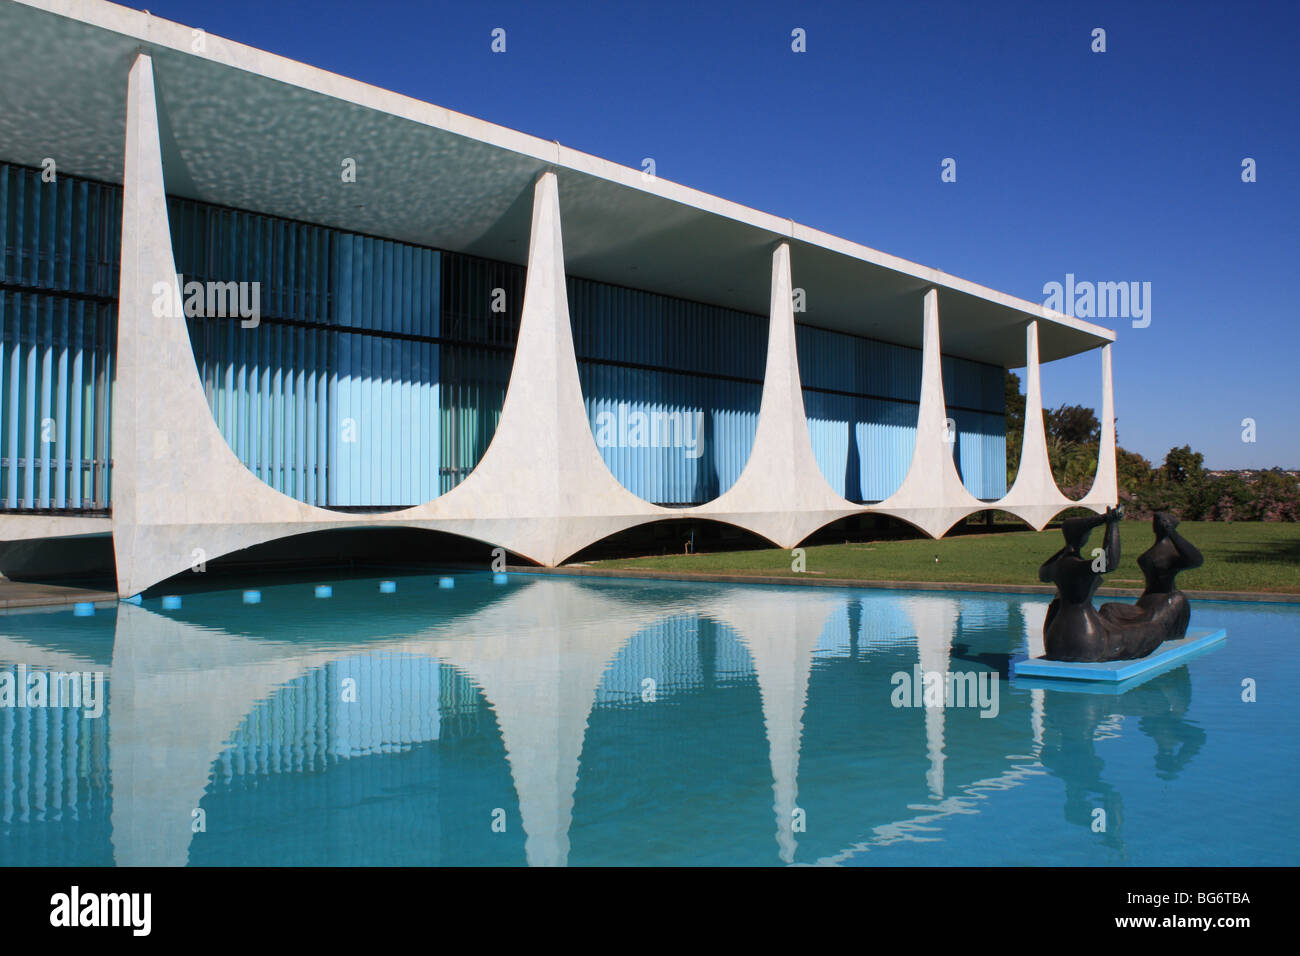 Palazzo Alvorada, Brasilia, Oscar Niemeyer Foto stock - Alamy